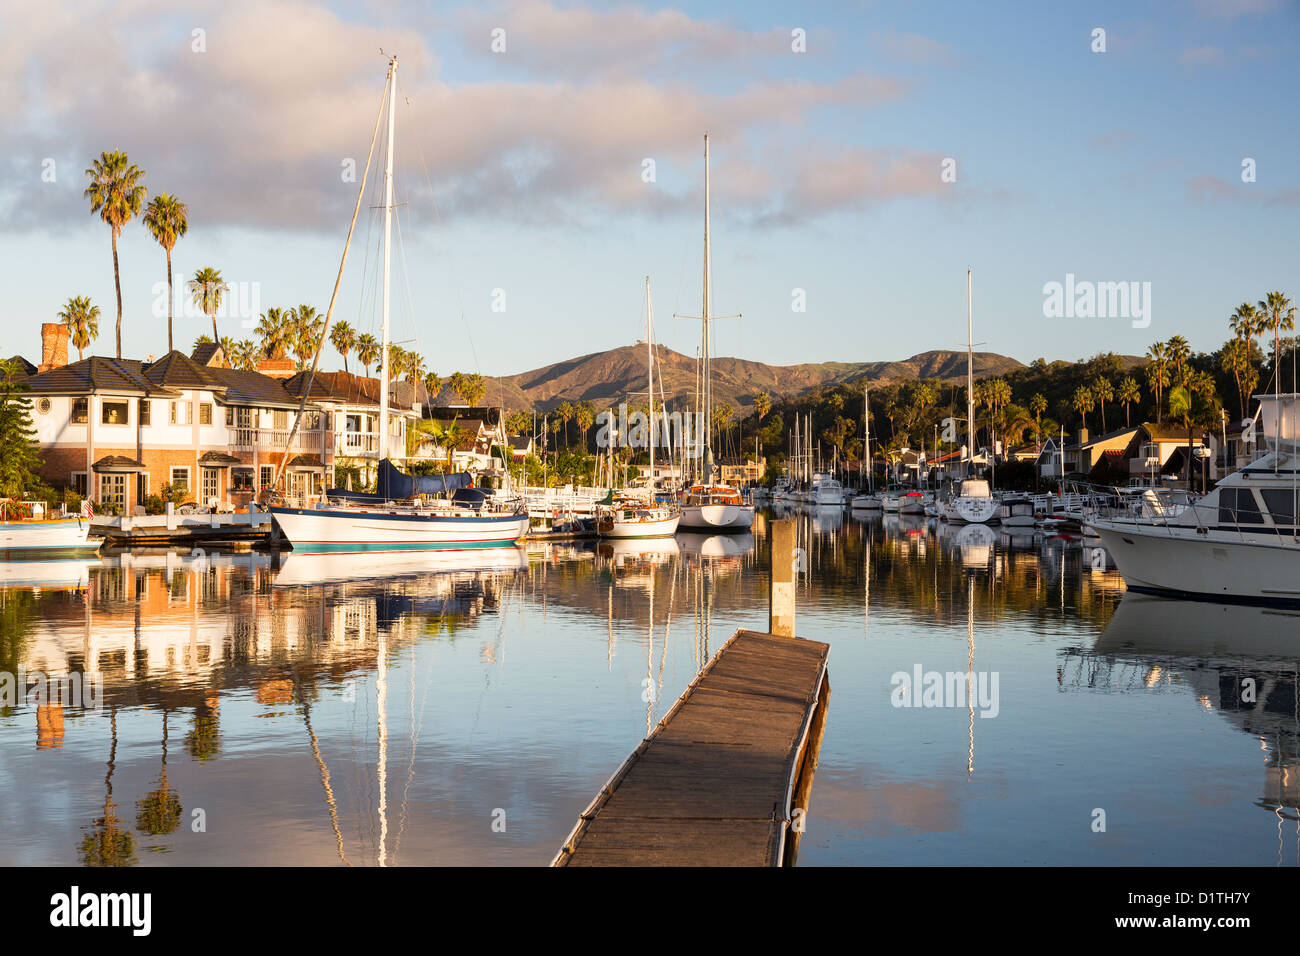 Sviluppo residenziale da acqua a Ventura, California con case moderne e yacht barche Foto Stock